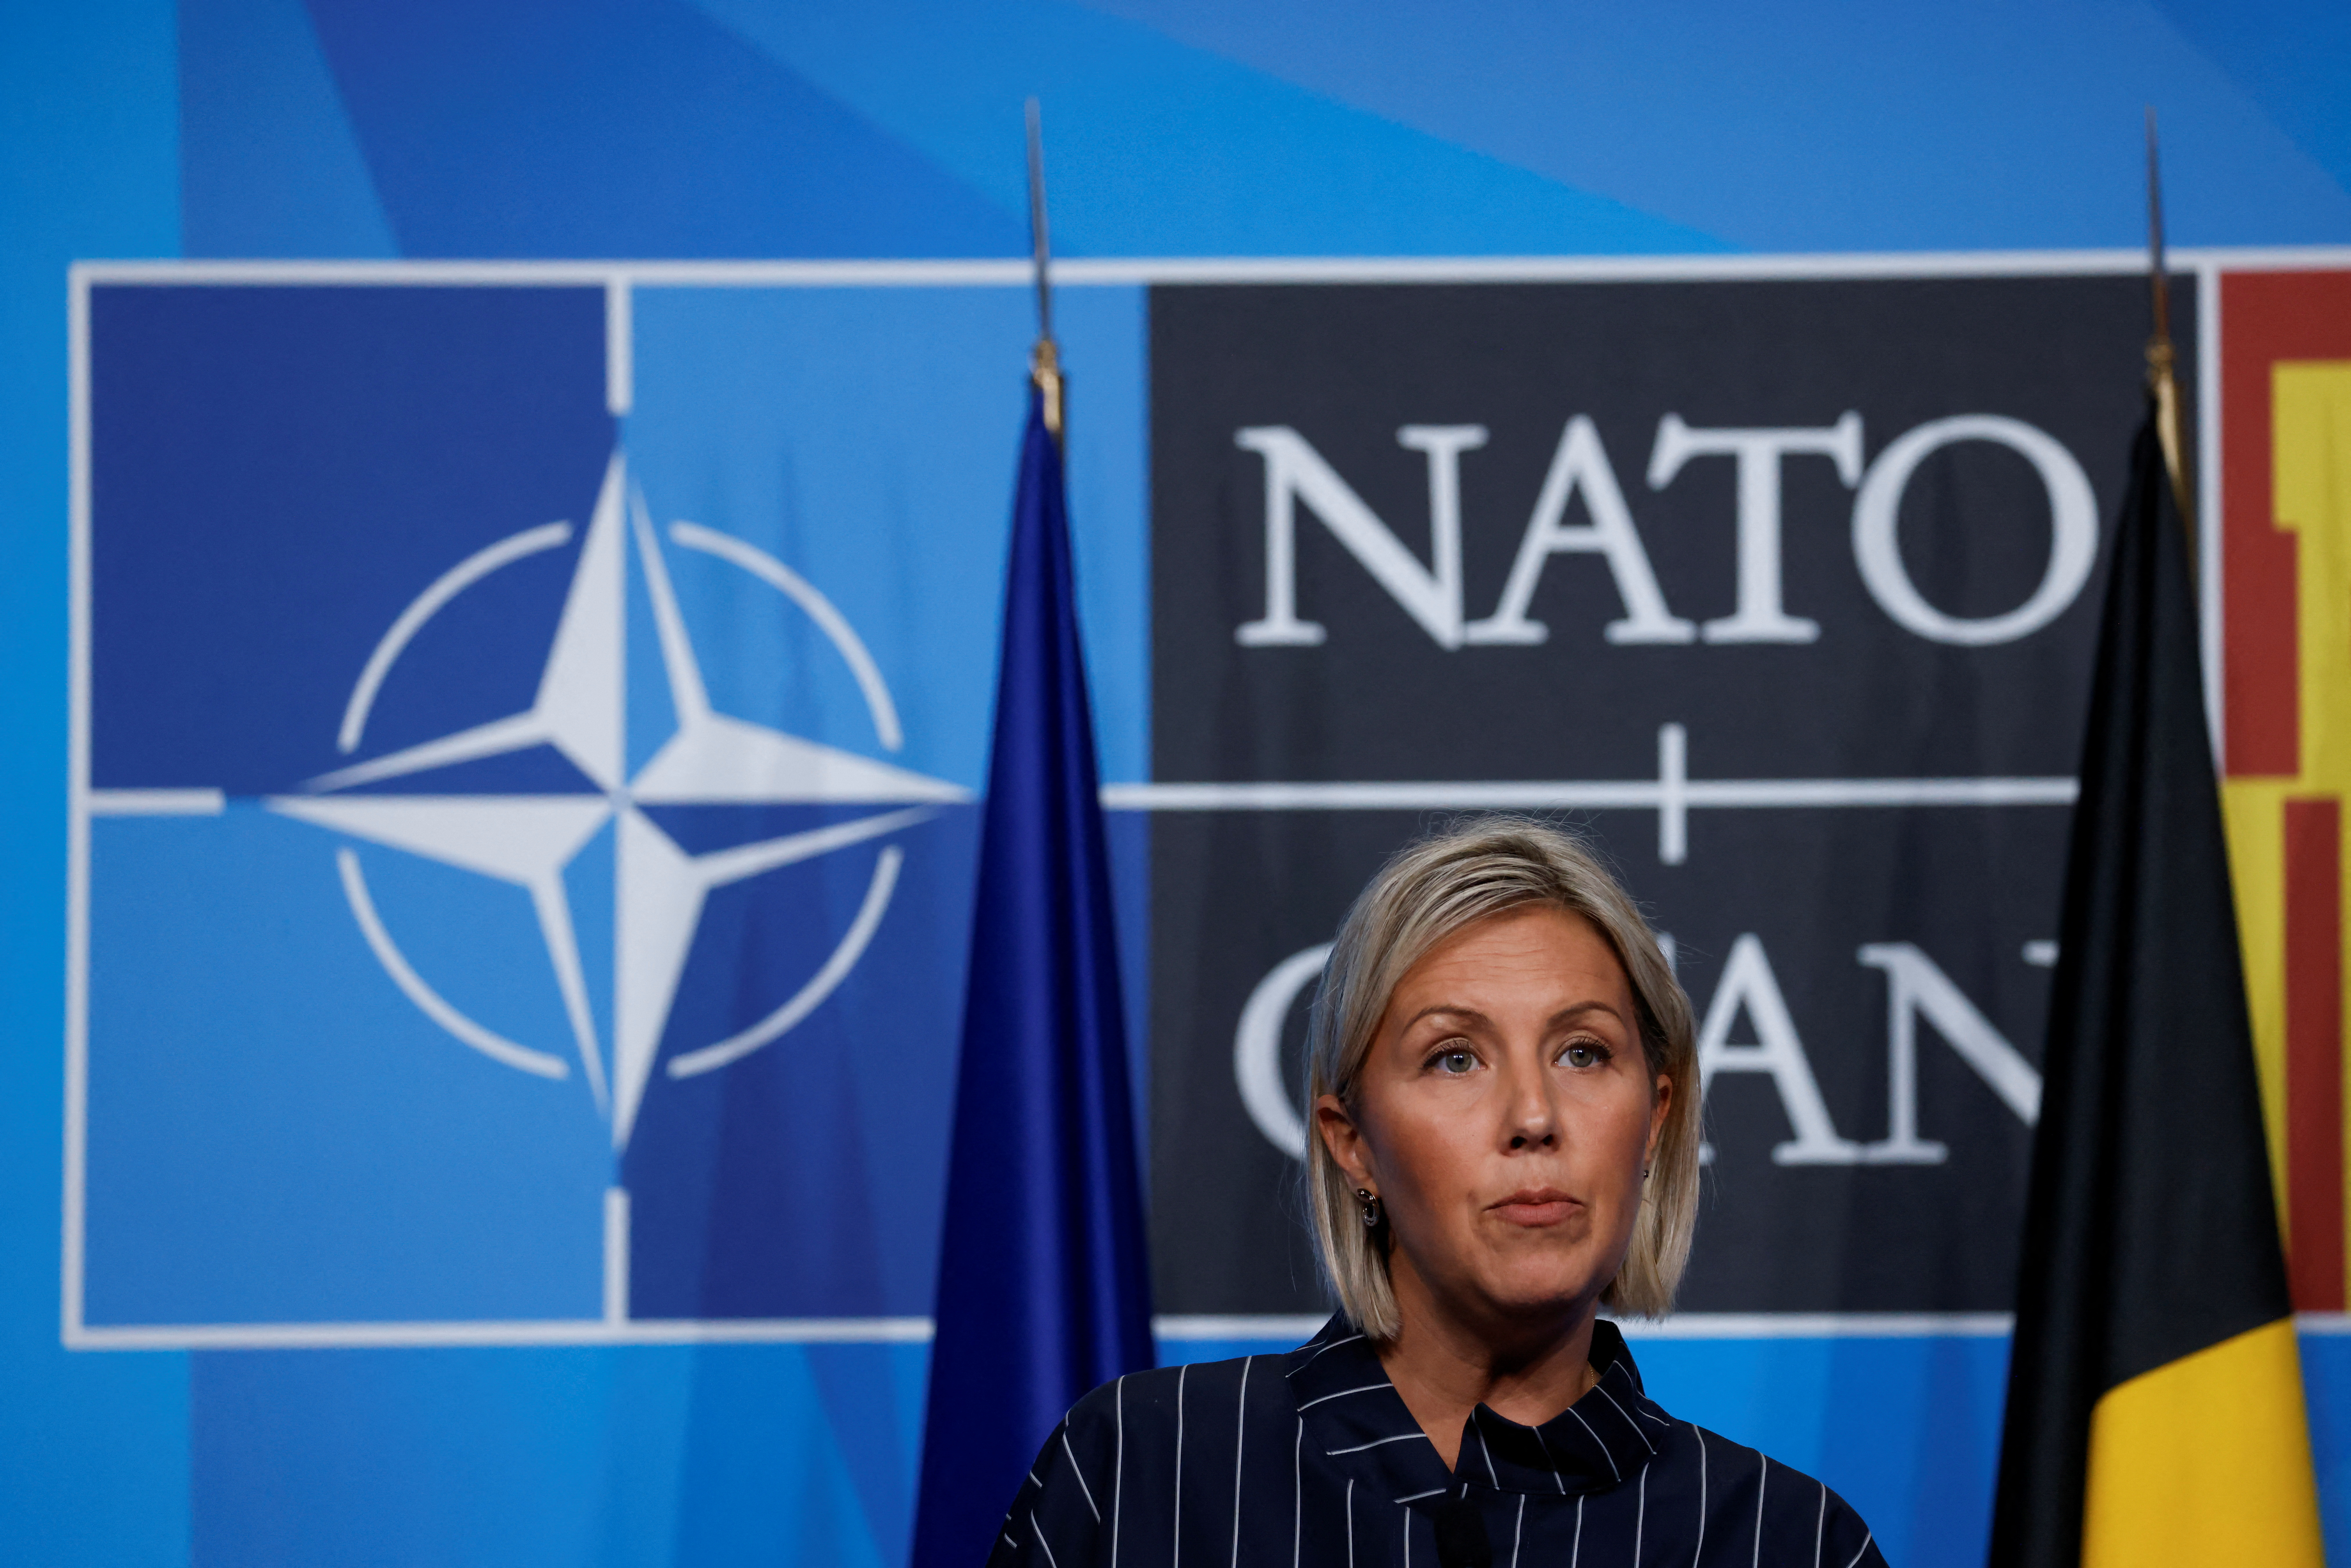 La ministra de Defensa de Bélgica, Ludivine Dedonder, habla en una conferencia de prensa durante una cumbre de la OTAN en Madrid, España, el 30 de junio de 2022. REUTERS/Yves Herman/Archivo